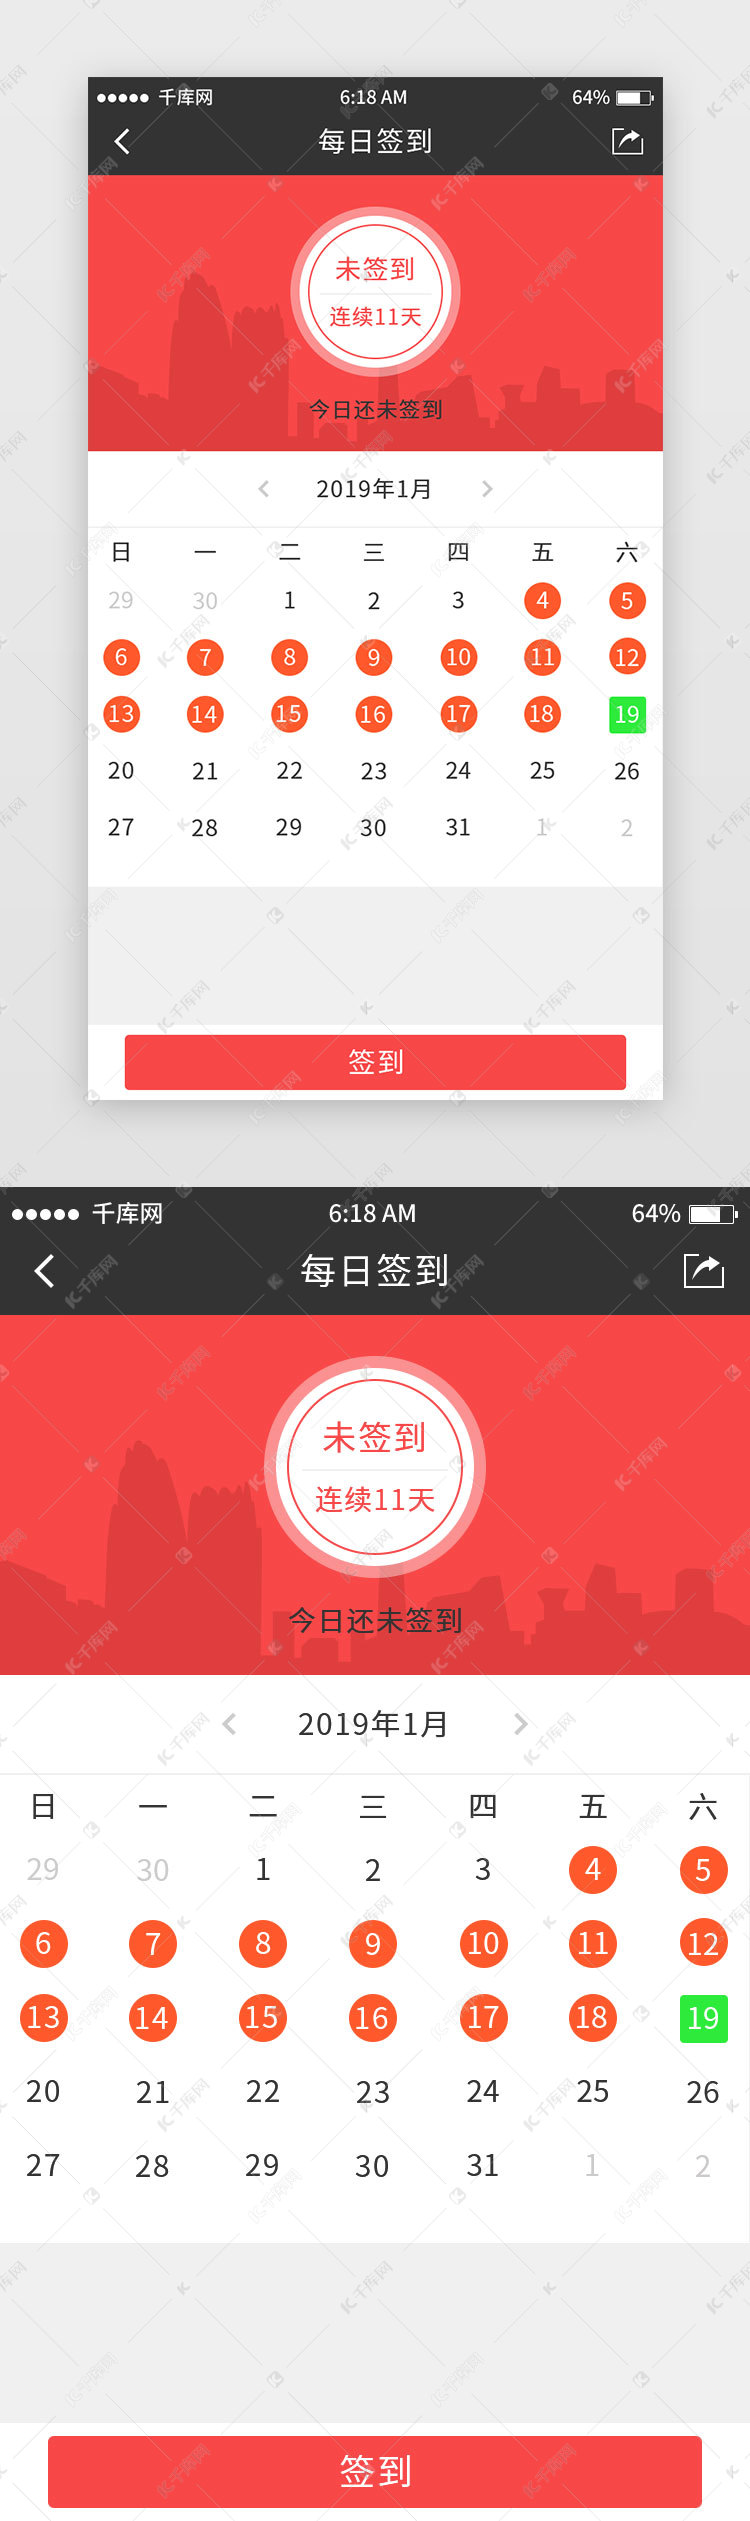 红色系中国风教育app签到页移动端界面